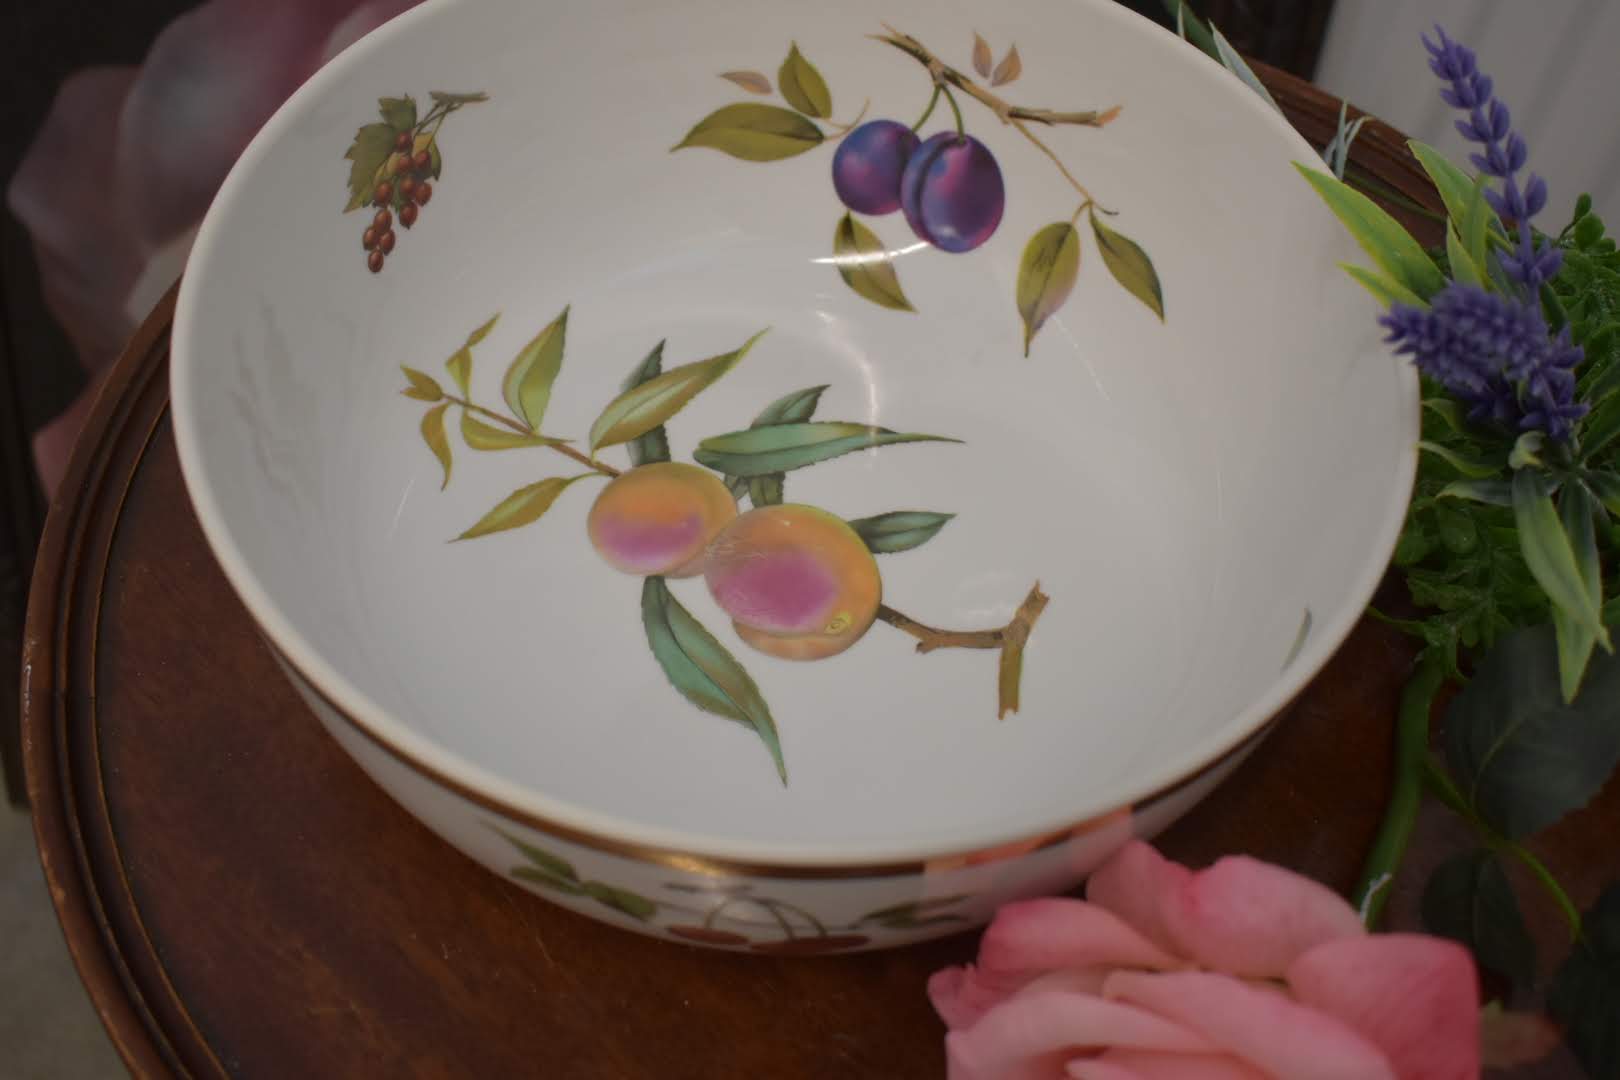 Royal Worchester Evesham Original Porcelain Fine China - Huge Bowl - Gold Trim - From England